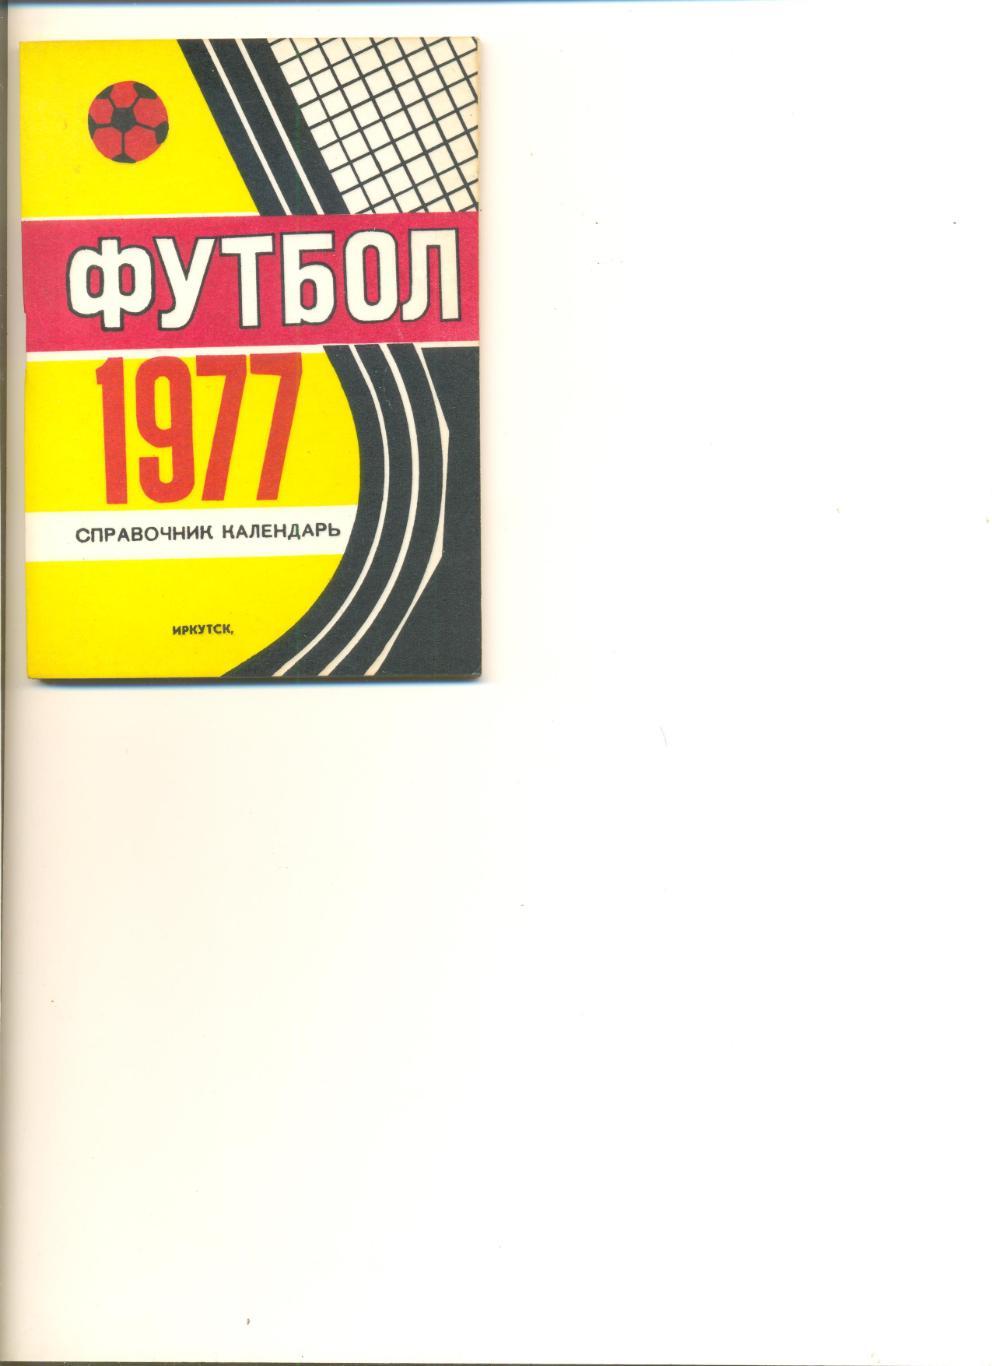 Календарь - справочник Иркутск - 1977 г.